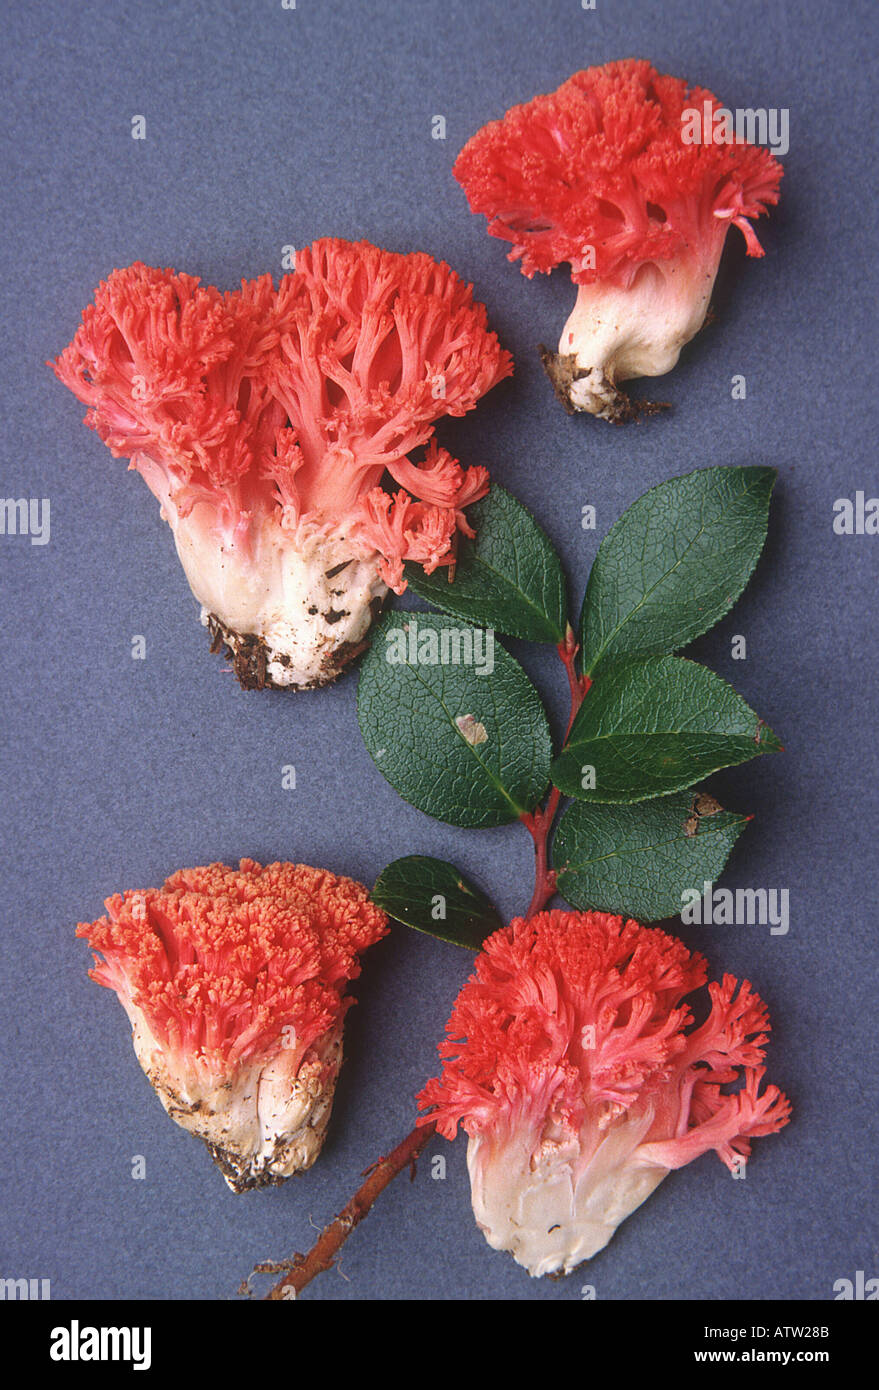 Ramaria araiospora var rubella North American collection Stock Photo